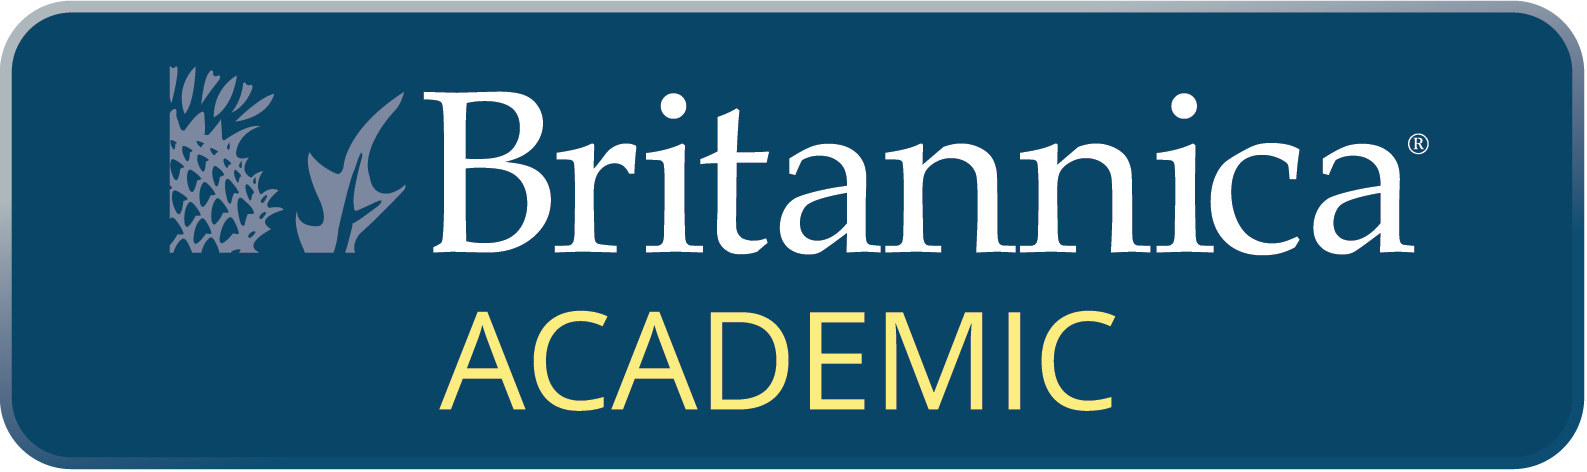 logo_britannica academic